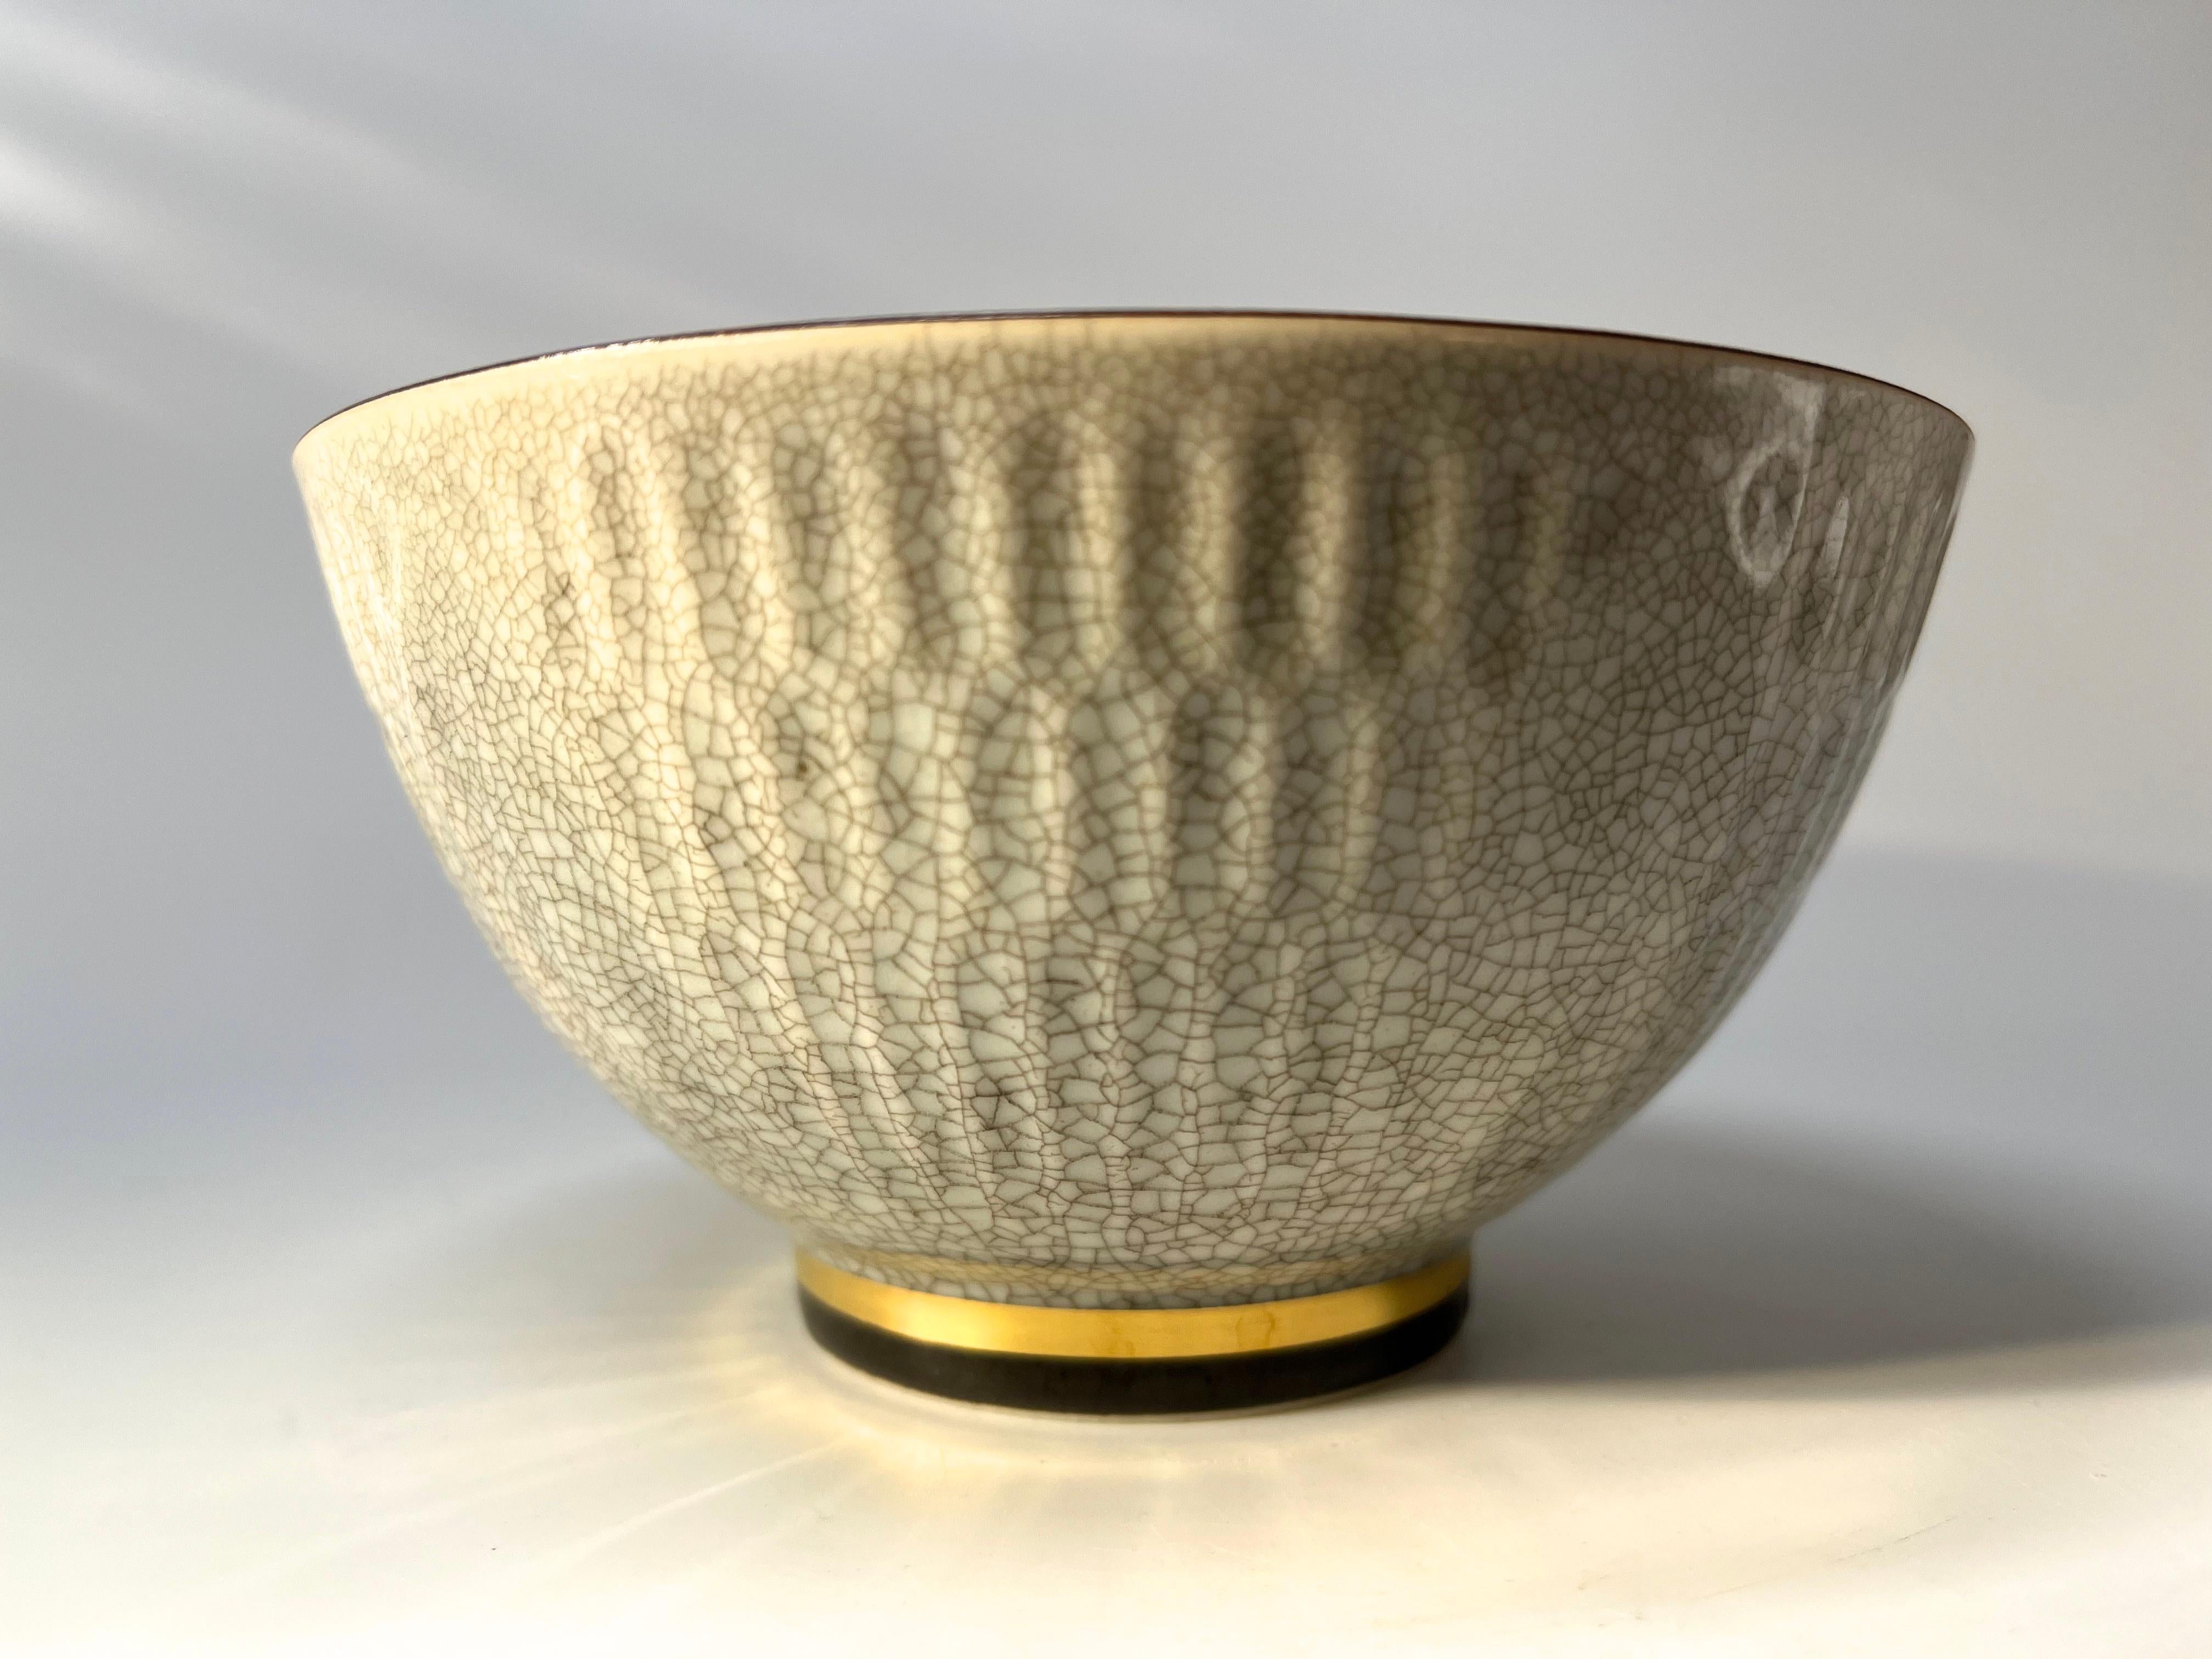 Scandinavian Modern Thorkild Olsen For Royal Copenhagen Terracotta Crackle Glazed Bowl #3431 For Sale